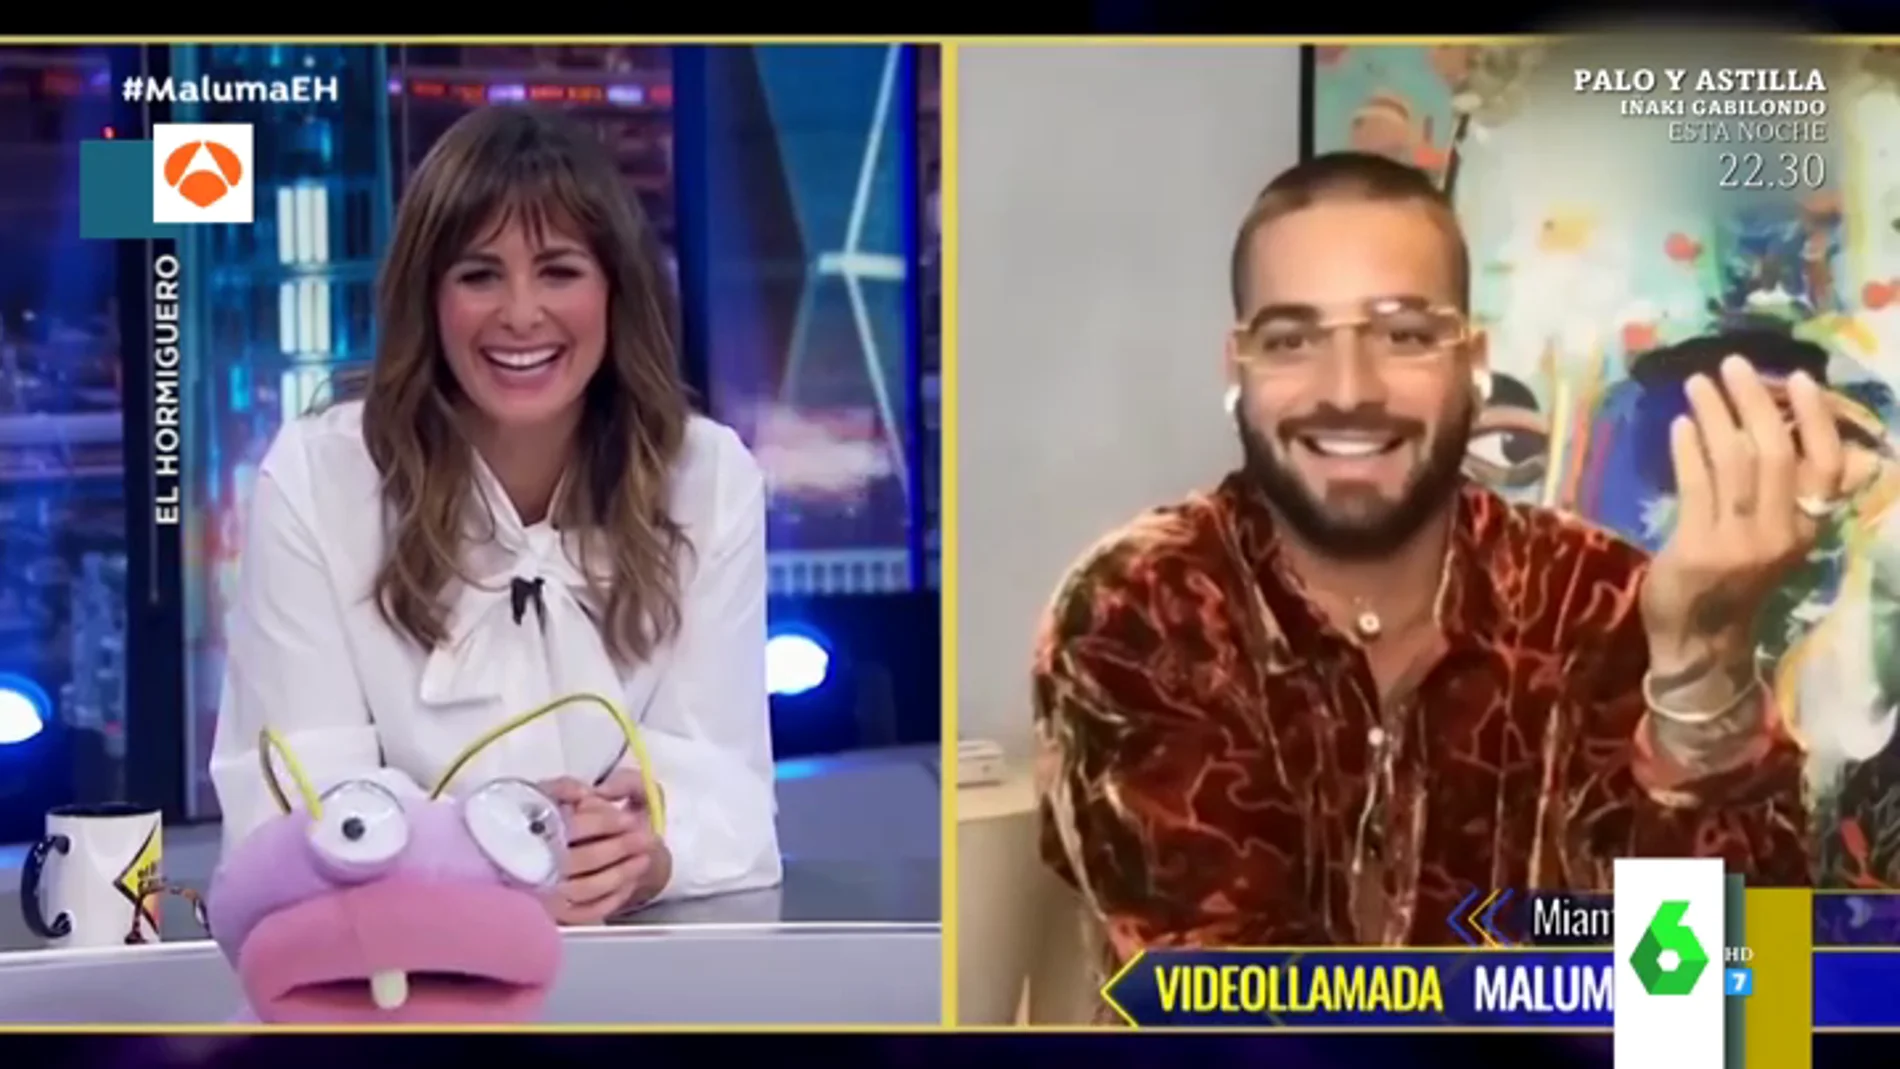 La divertida anécdota de Maluma con Kim Kardashian: "Estaba con la cara super tiesa, no se qué se había hecho"